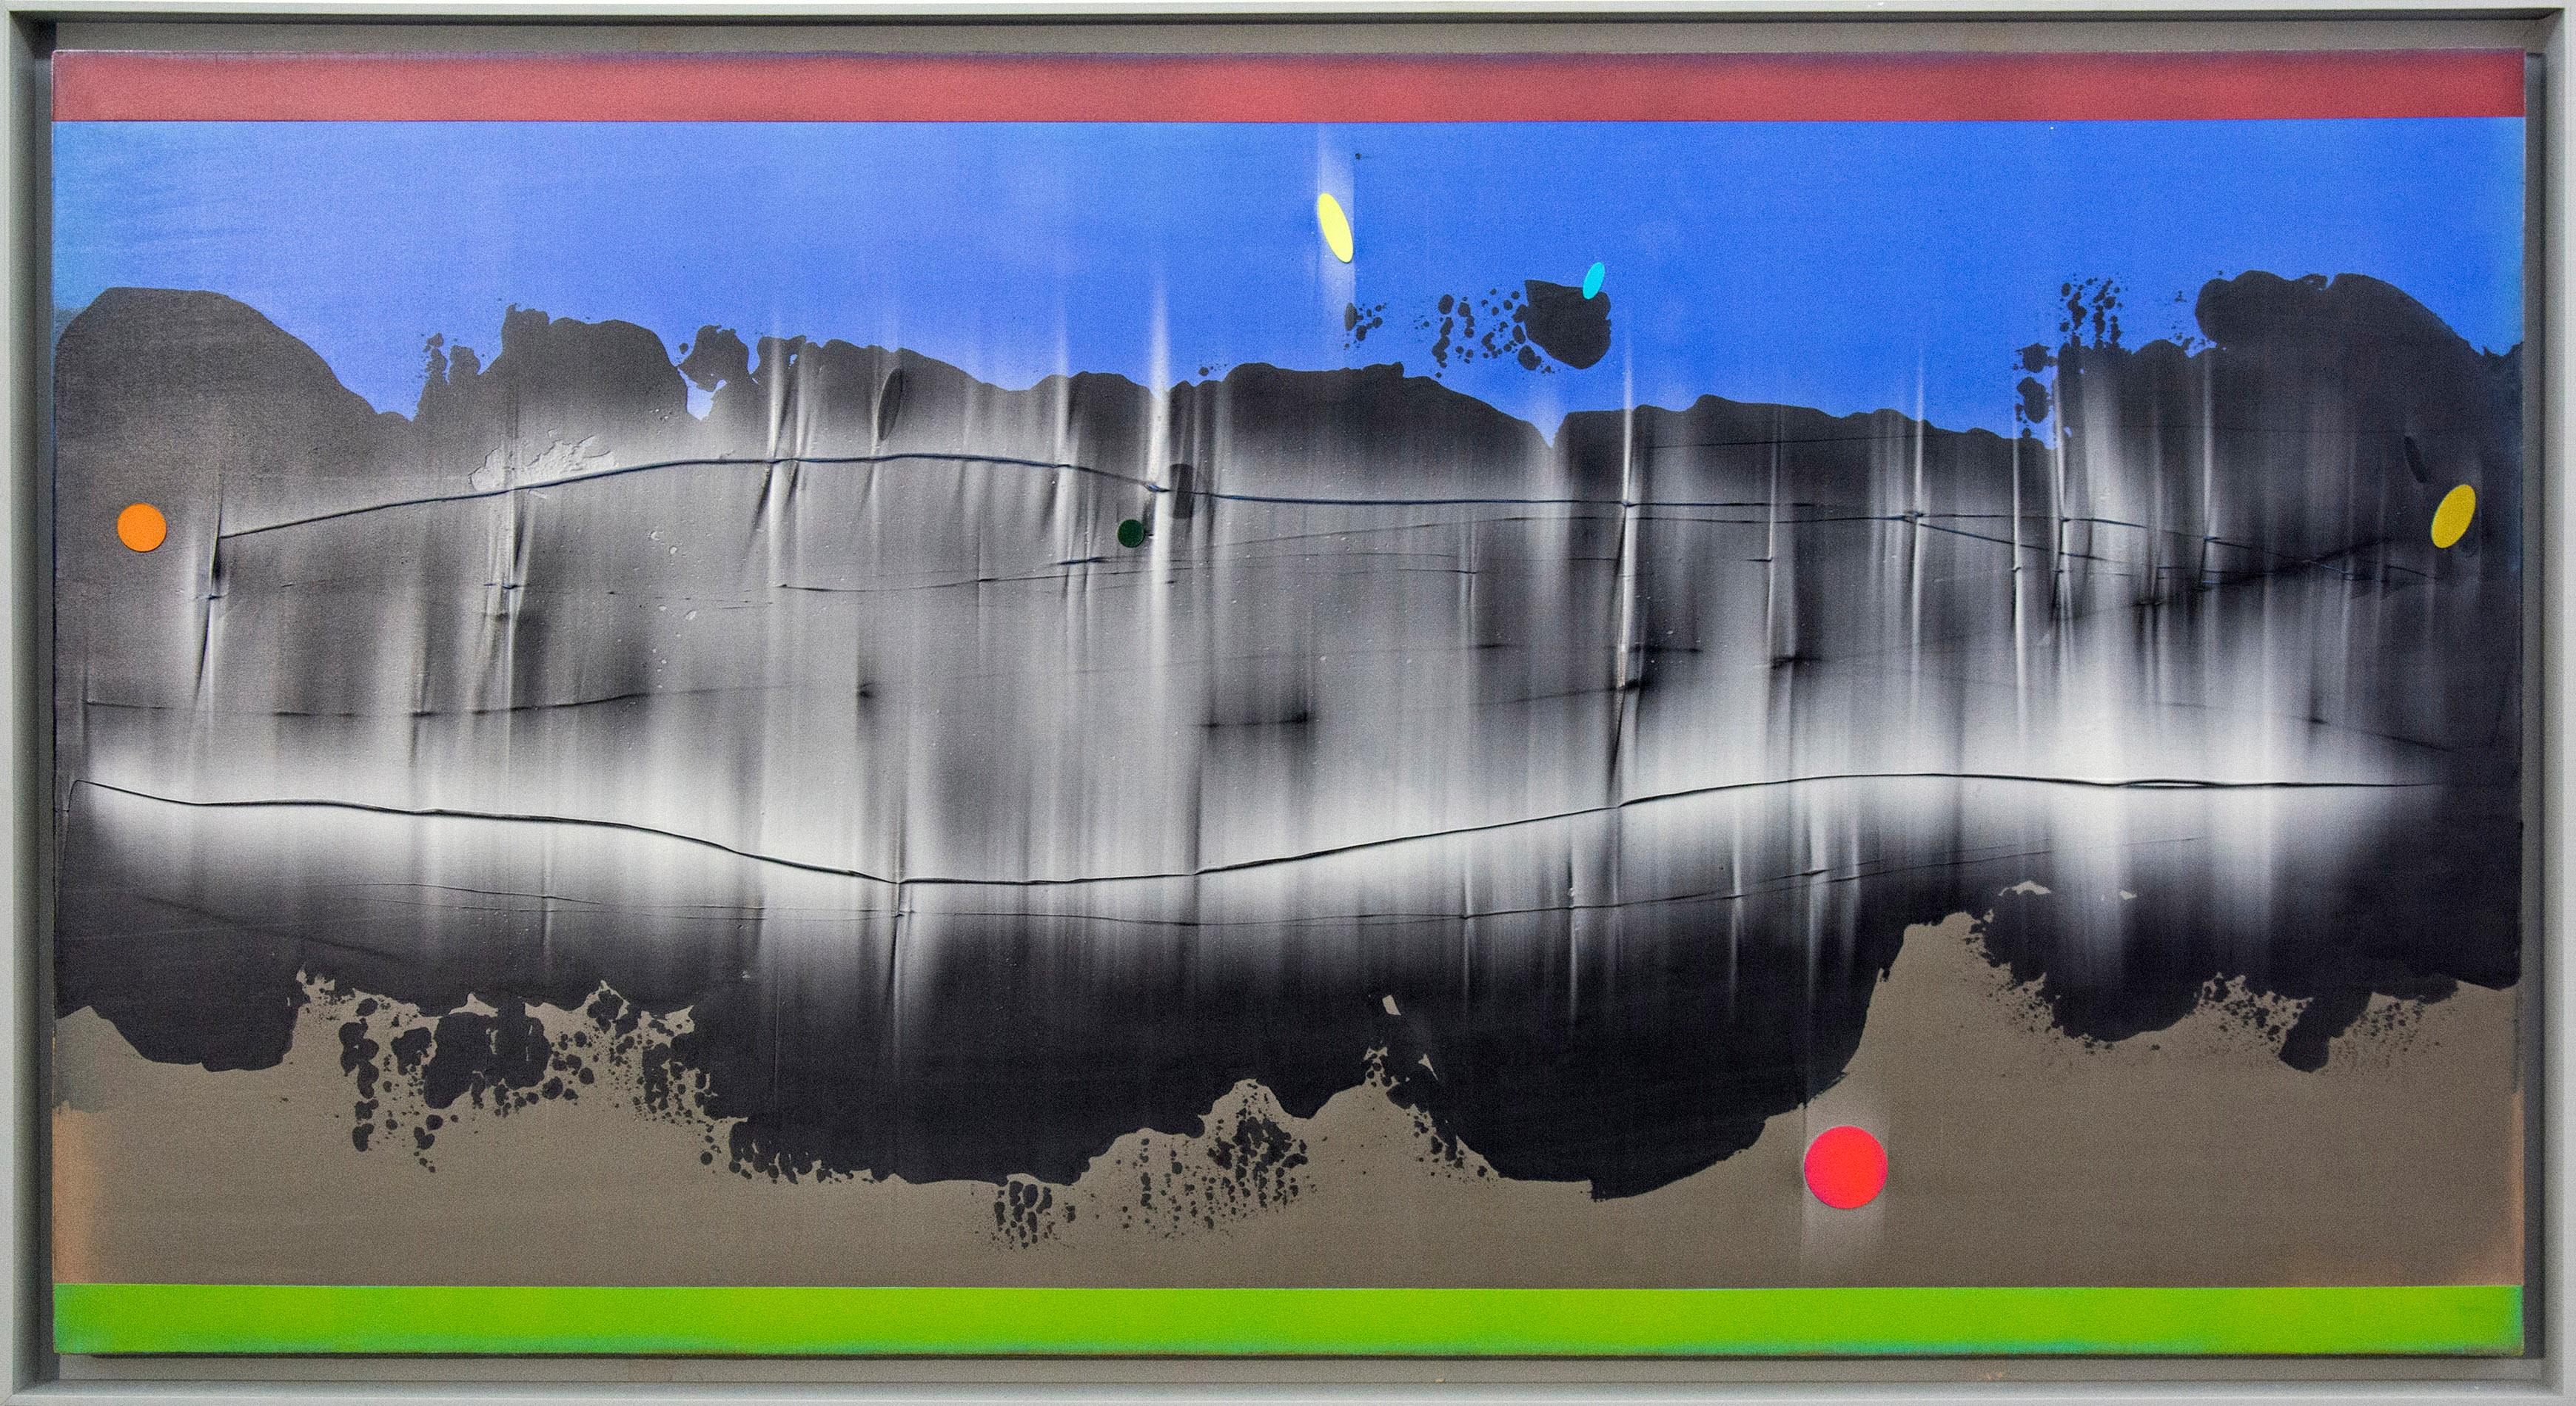 Abstract Painting Alice Teichert - Perpetuum - coloré, inspiré de la musique, gestuel, abstrait, acrylique sur toile